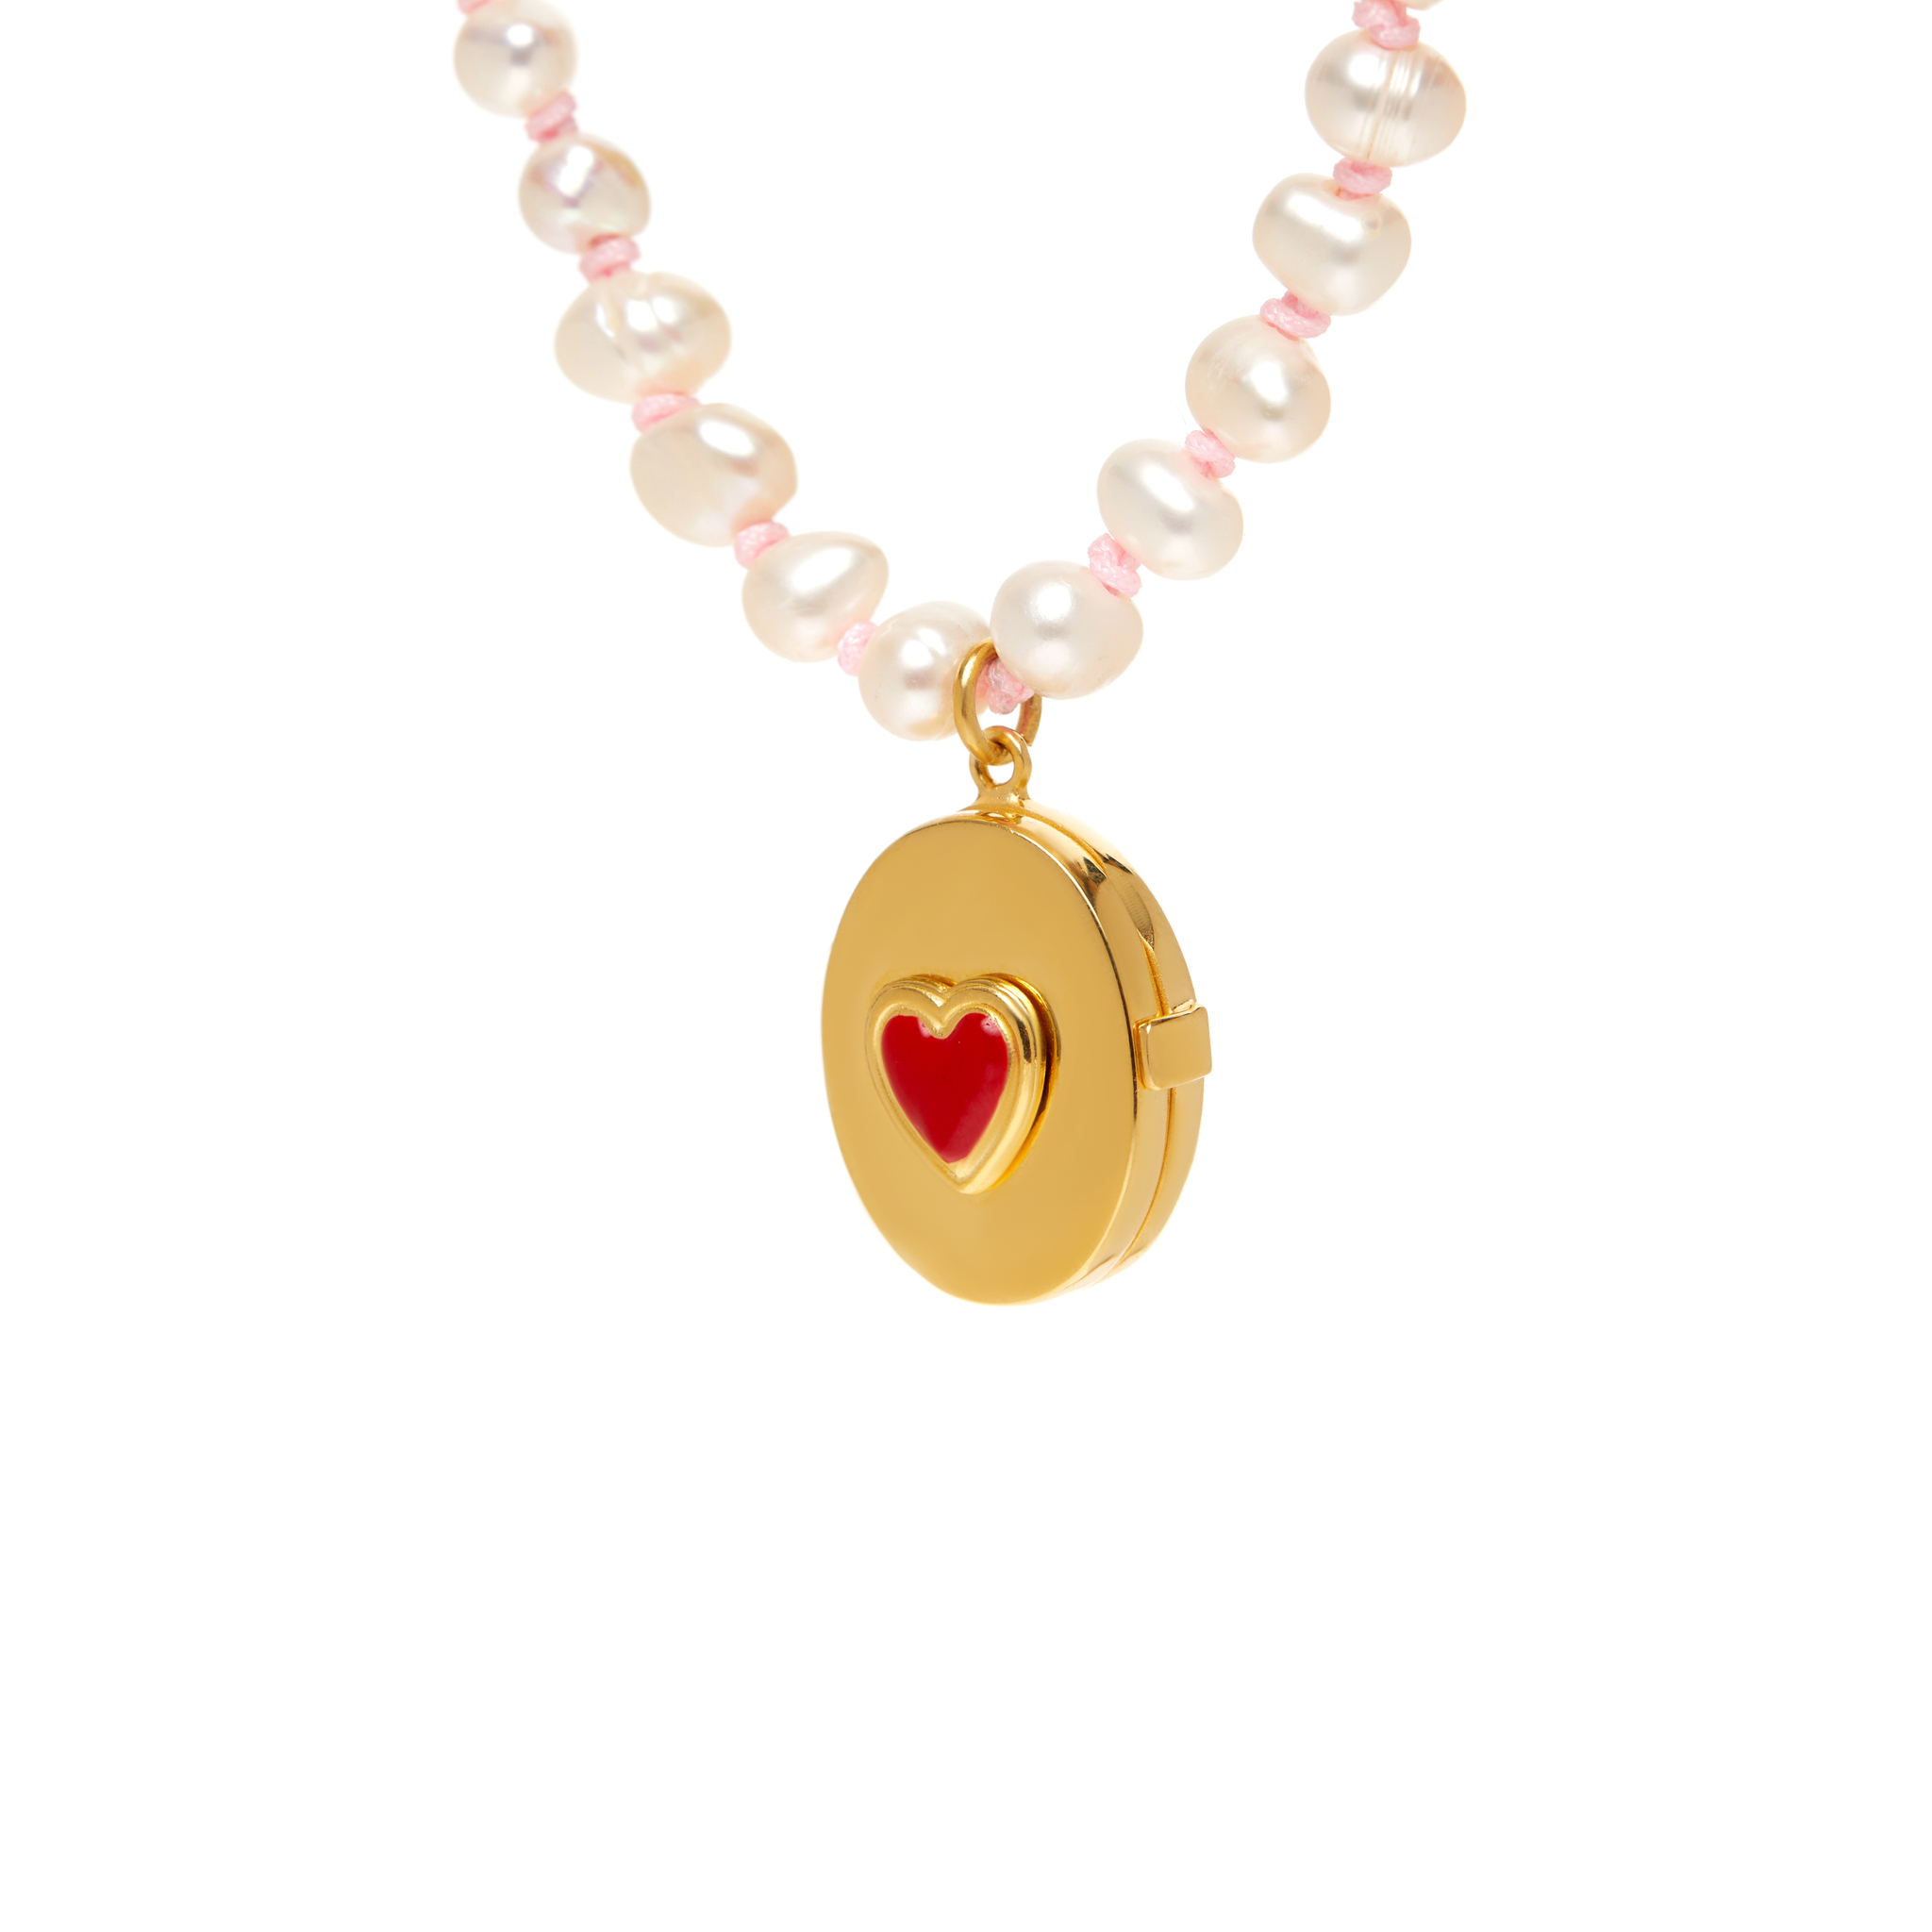 WILHELMINA GARCIA Колье Heart Locket Knitted Necklace – Red wilhelmina garcia колье heart locket knitted necklace – red